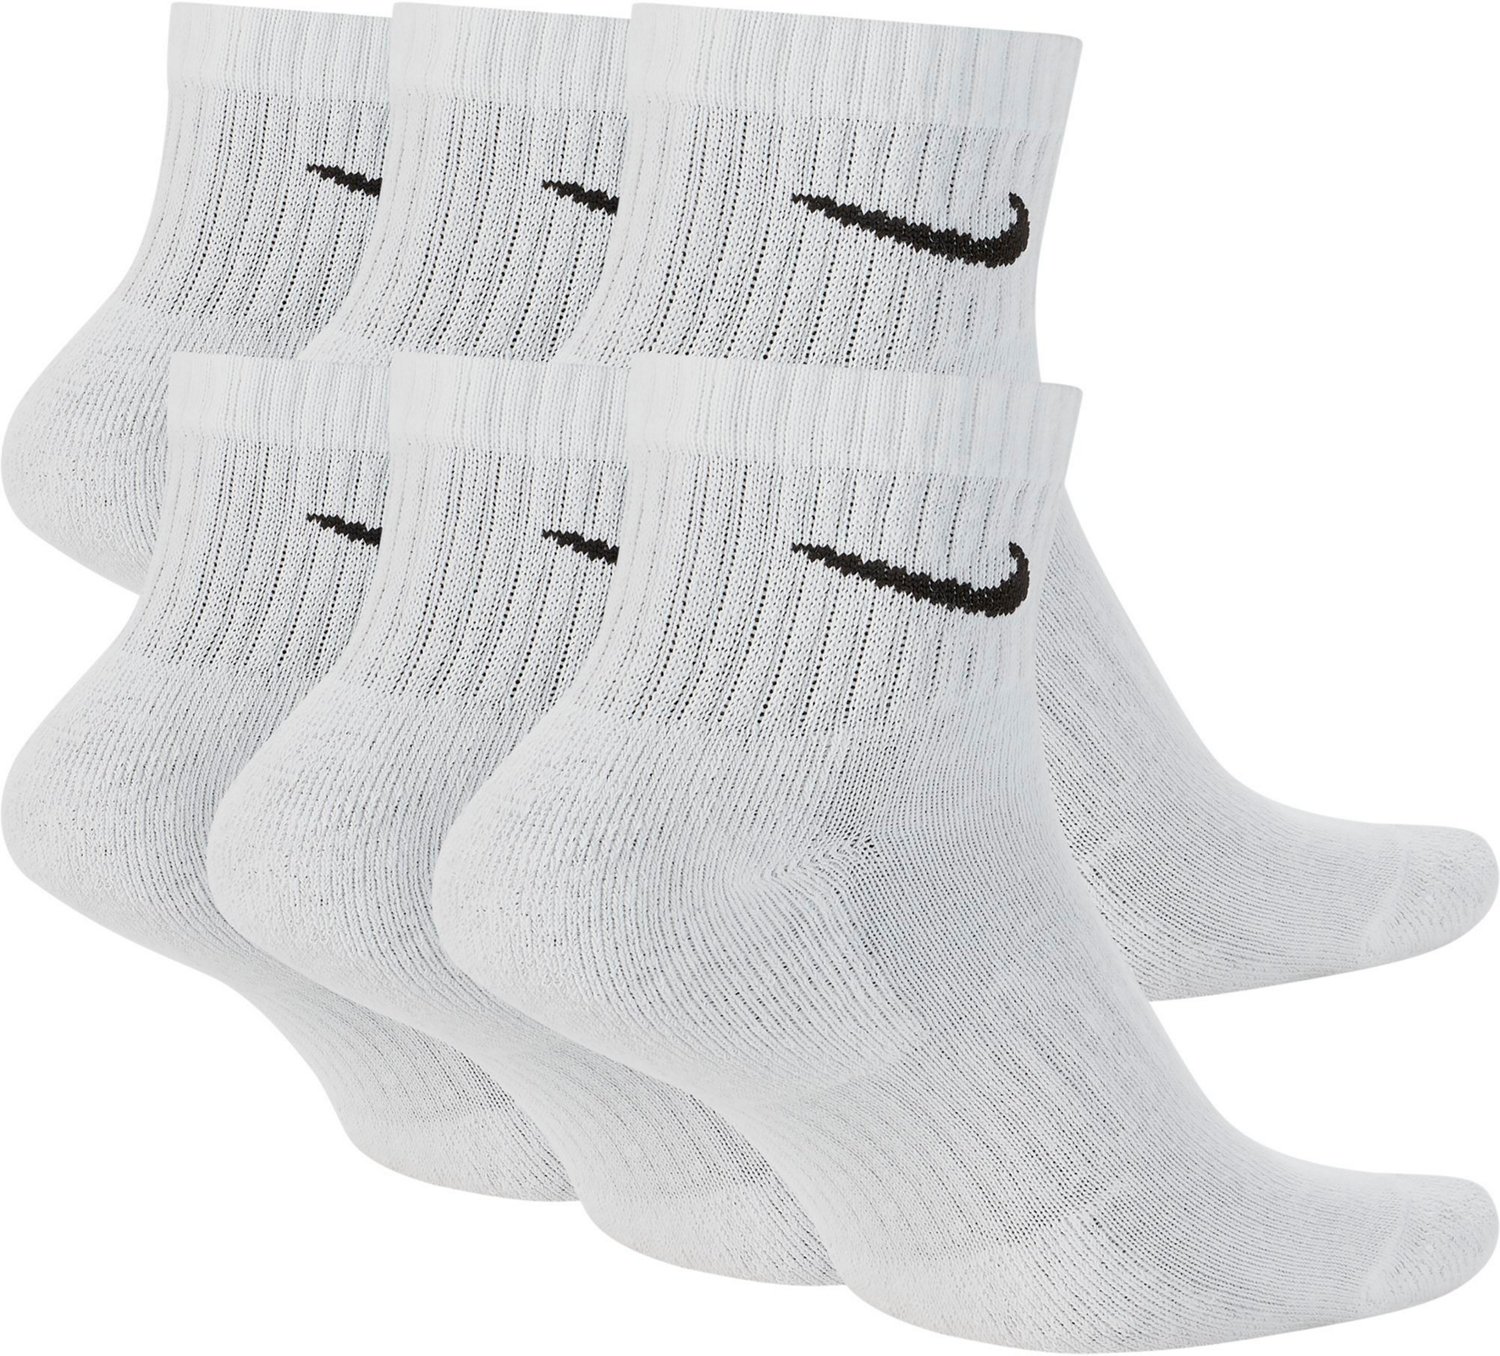 Nike Men's Everyday Cushioned Quarter-Length Training Socks 6 Pack ...